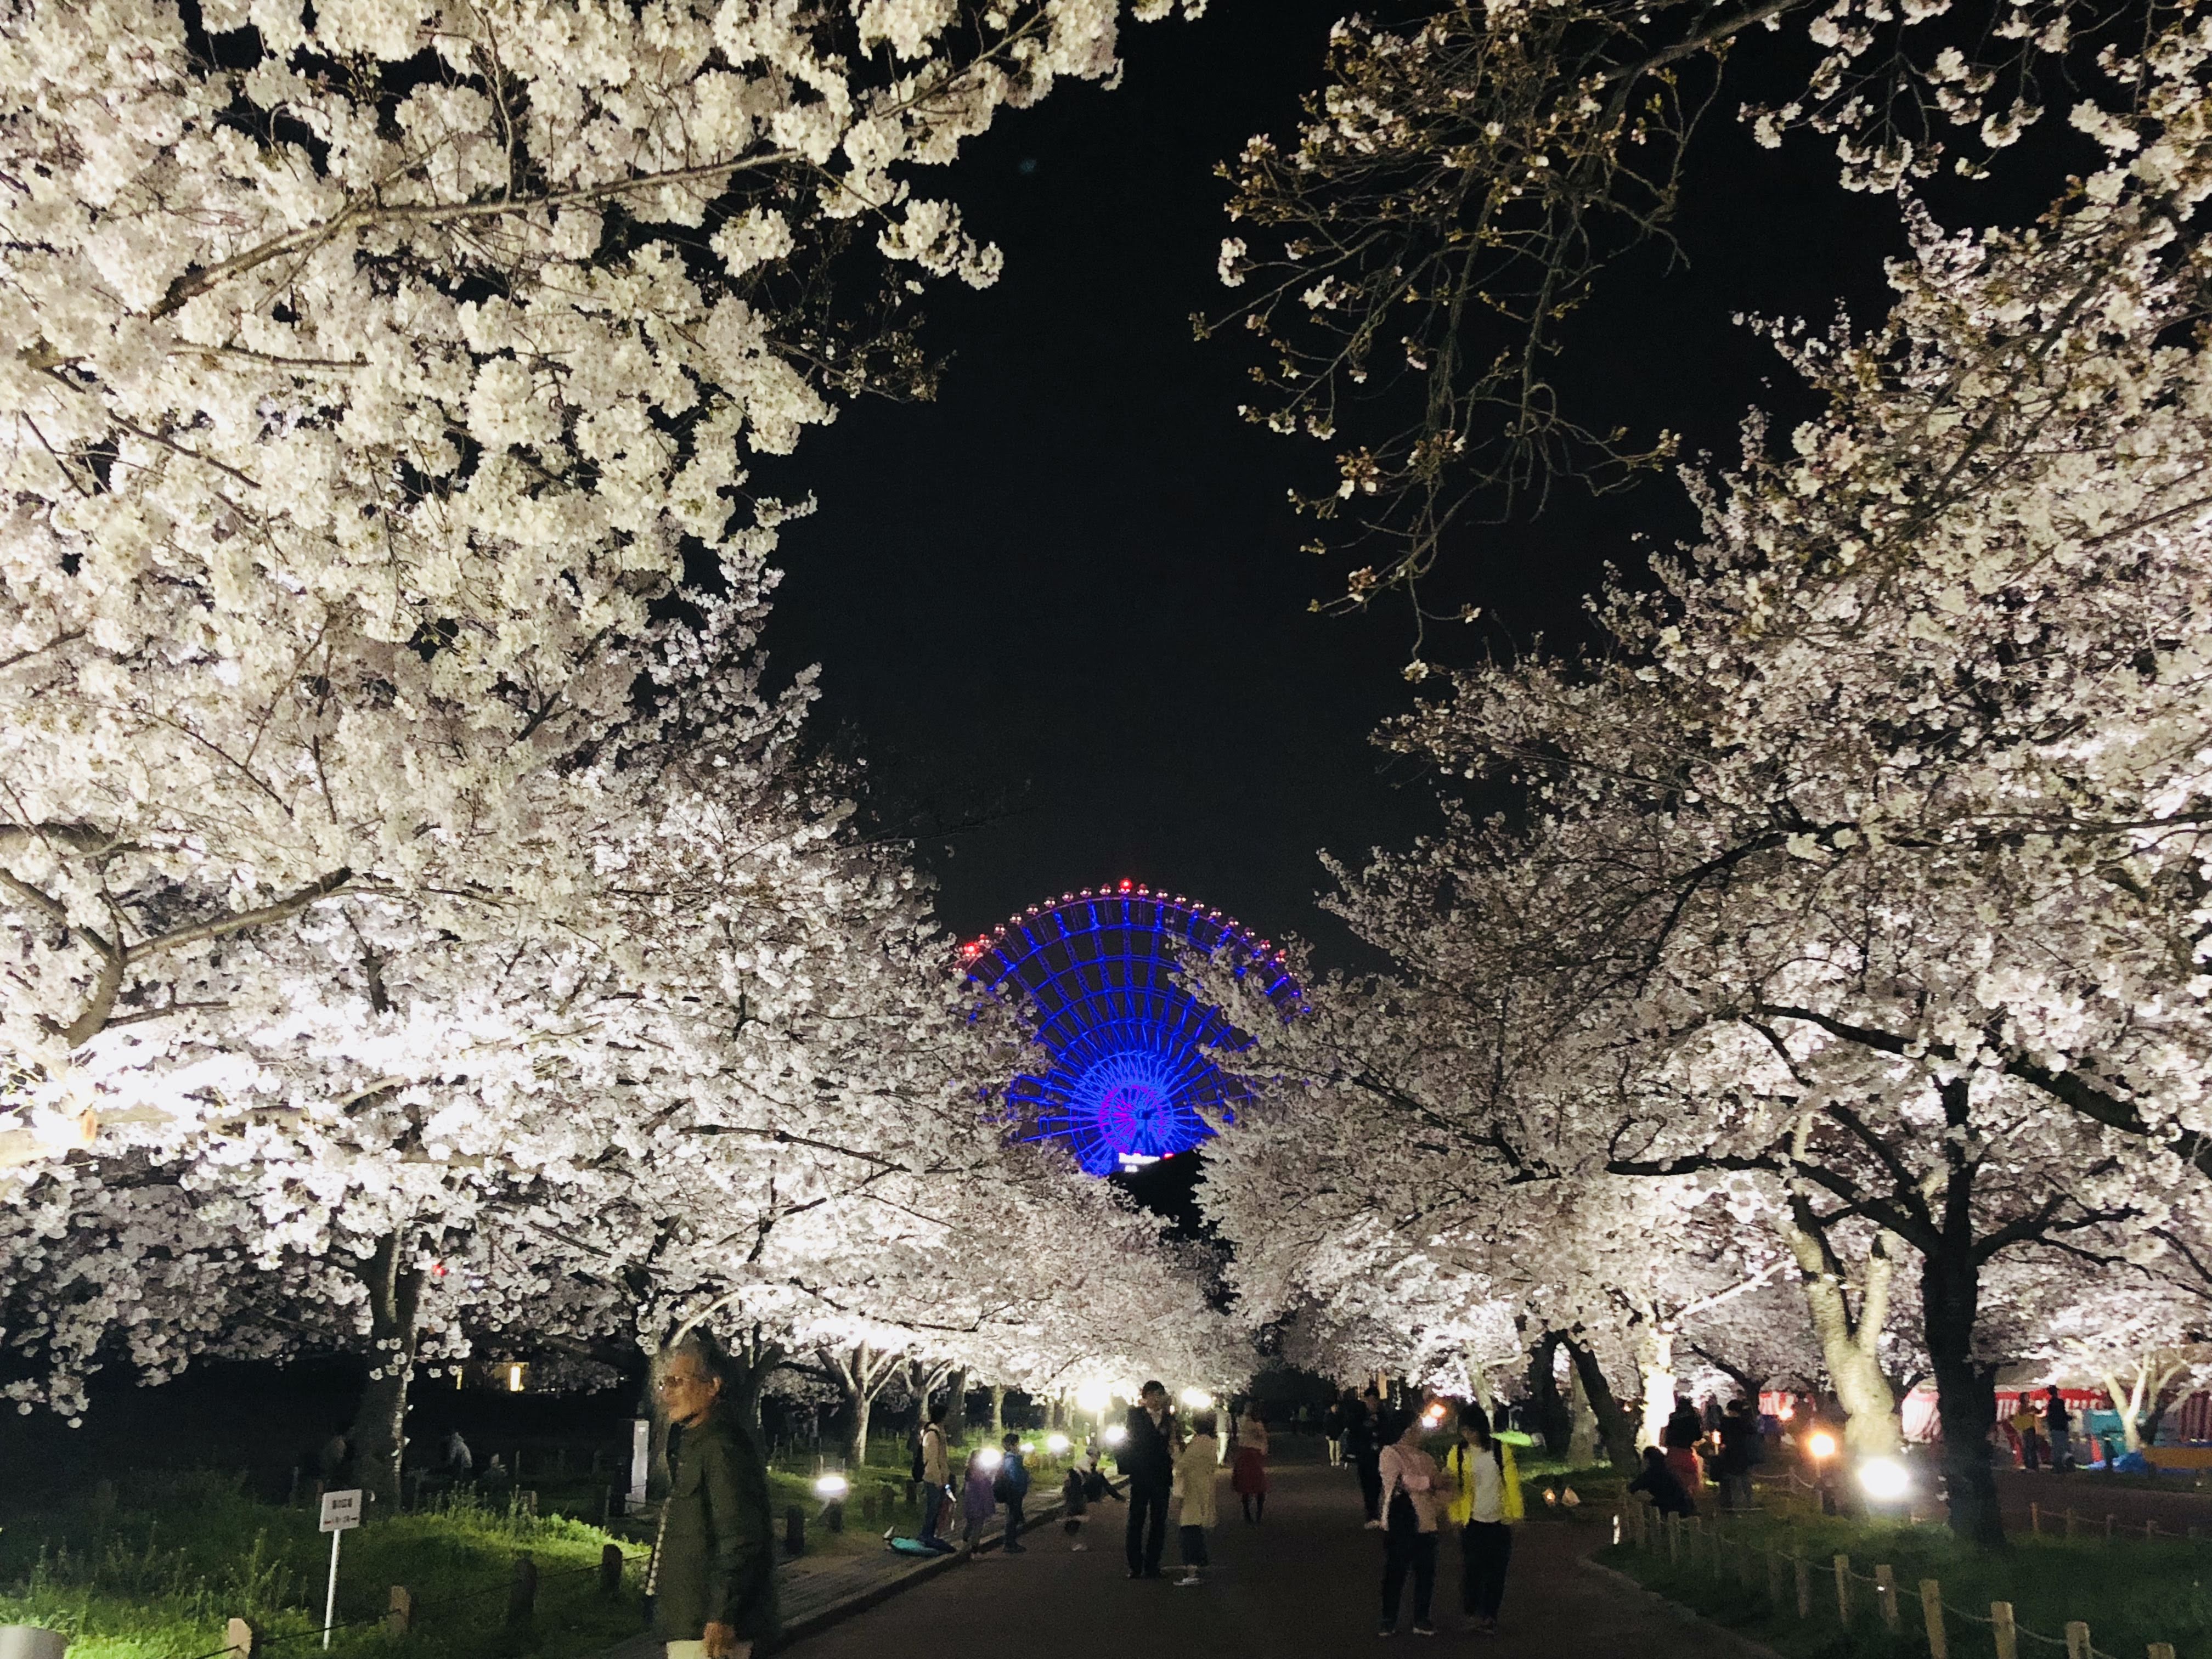 万博記念公園の夜桜と観覧車 無料写真 フリー素材のダウンロードサイト もある